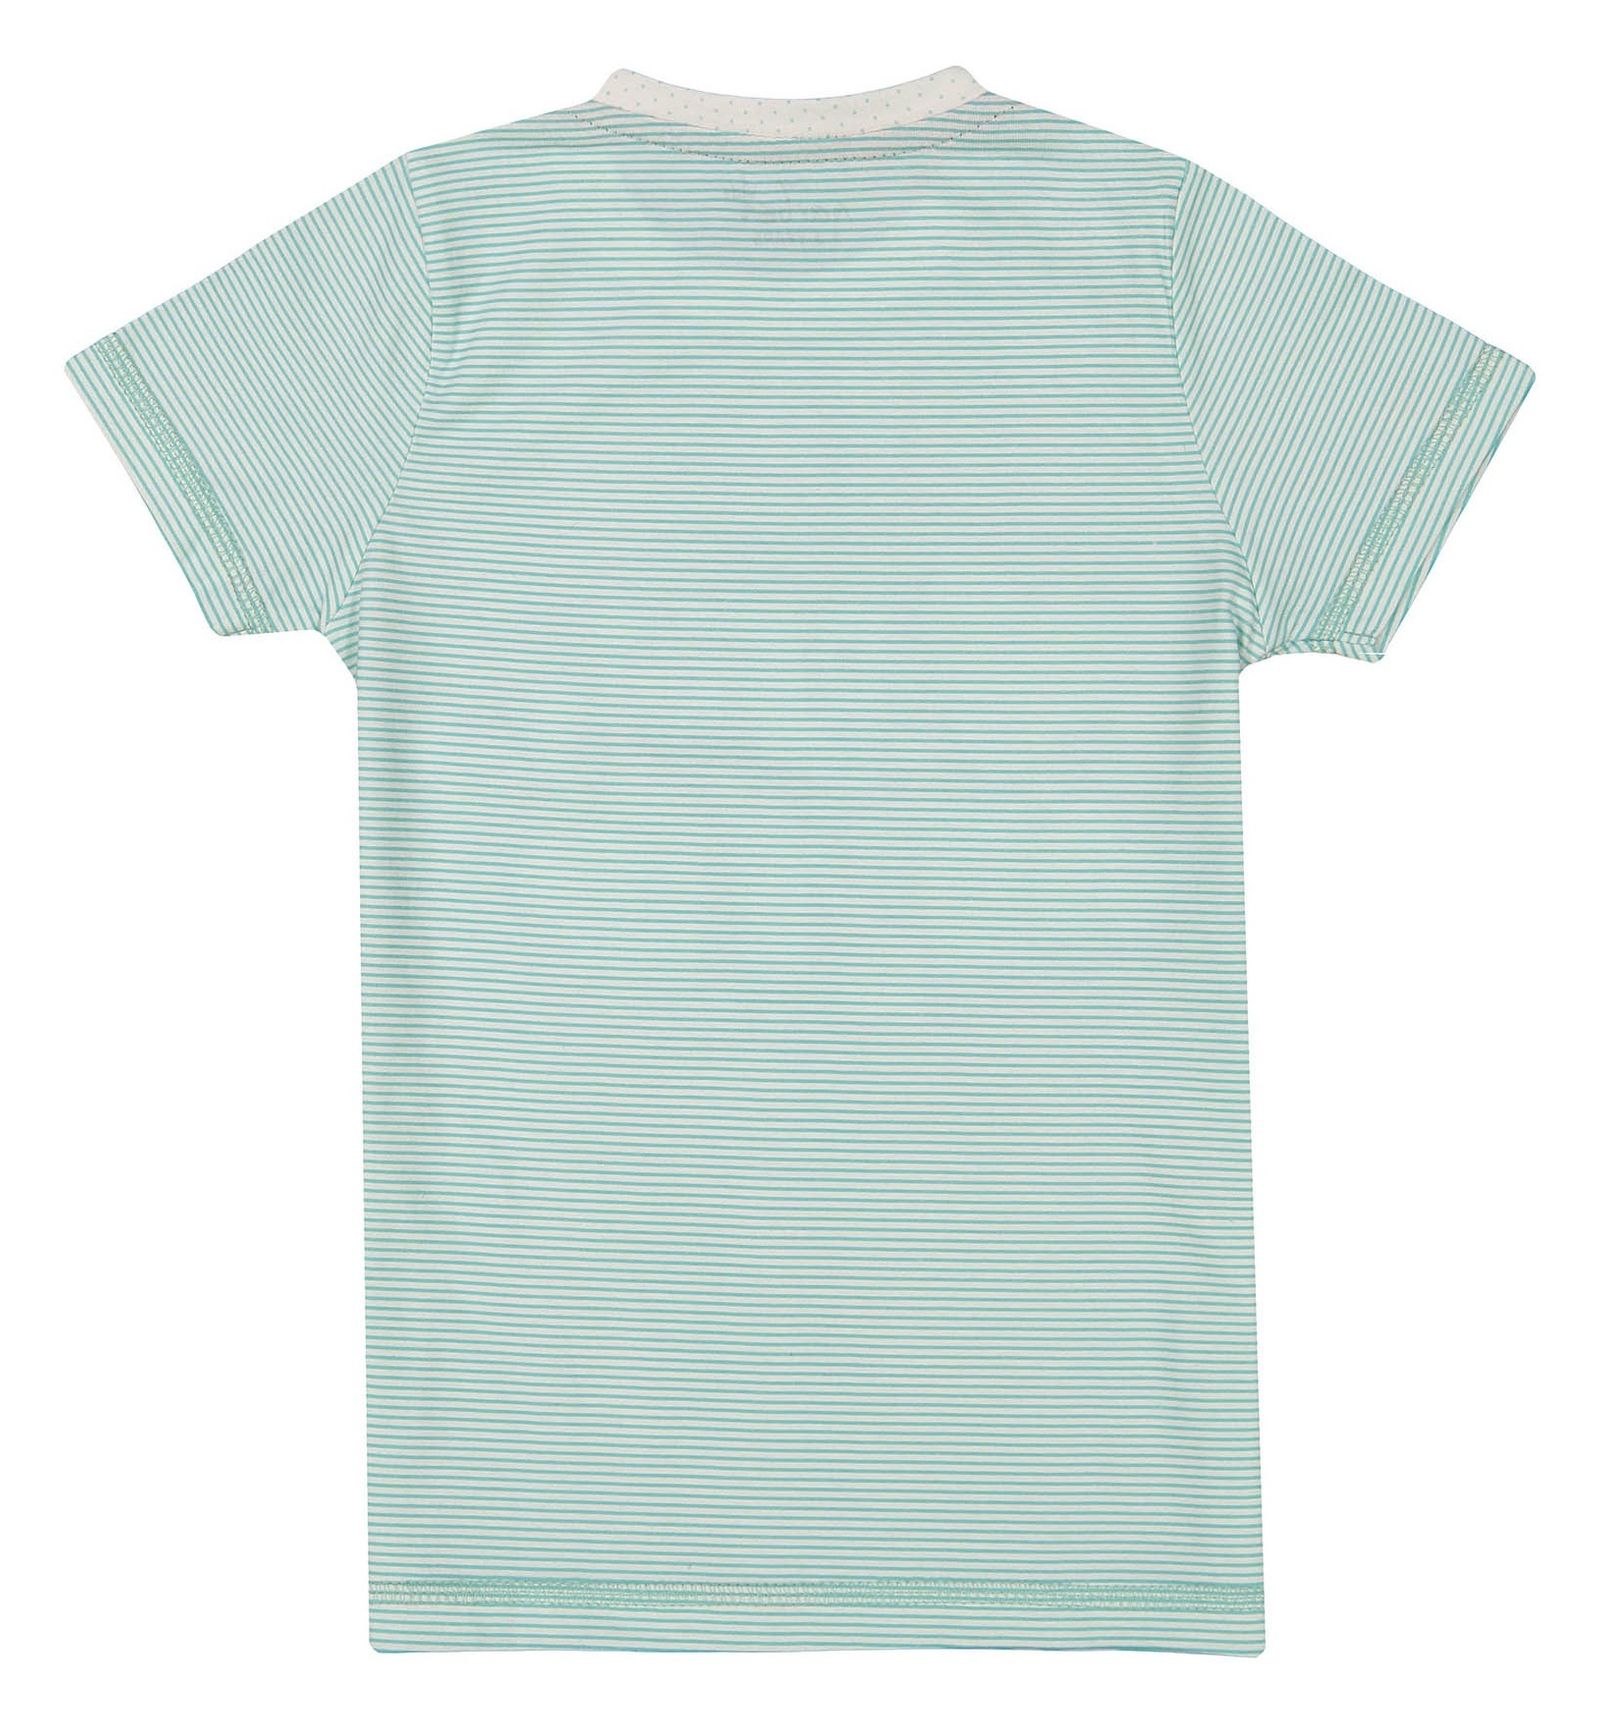 تی شرت و شلوار راحتی نخی دخترانه - ناربن - سبز آبي و سفيد - 4